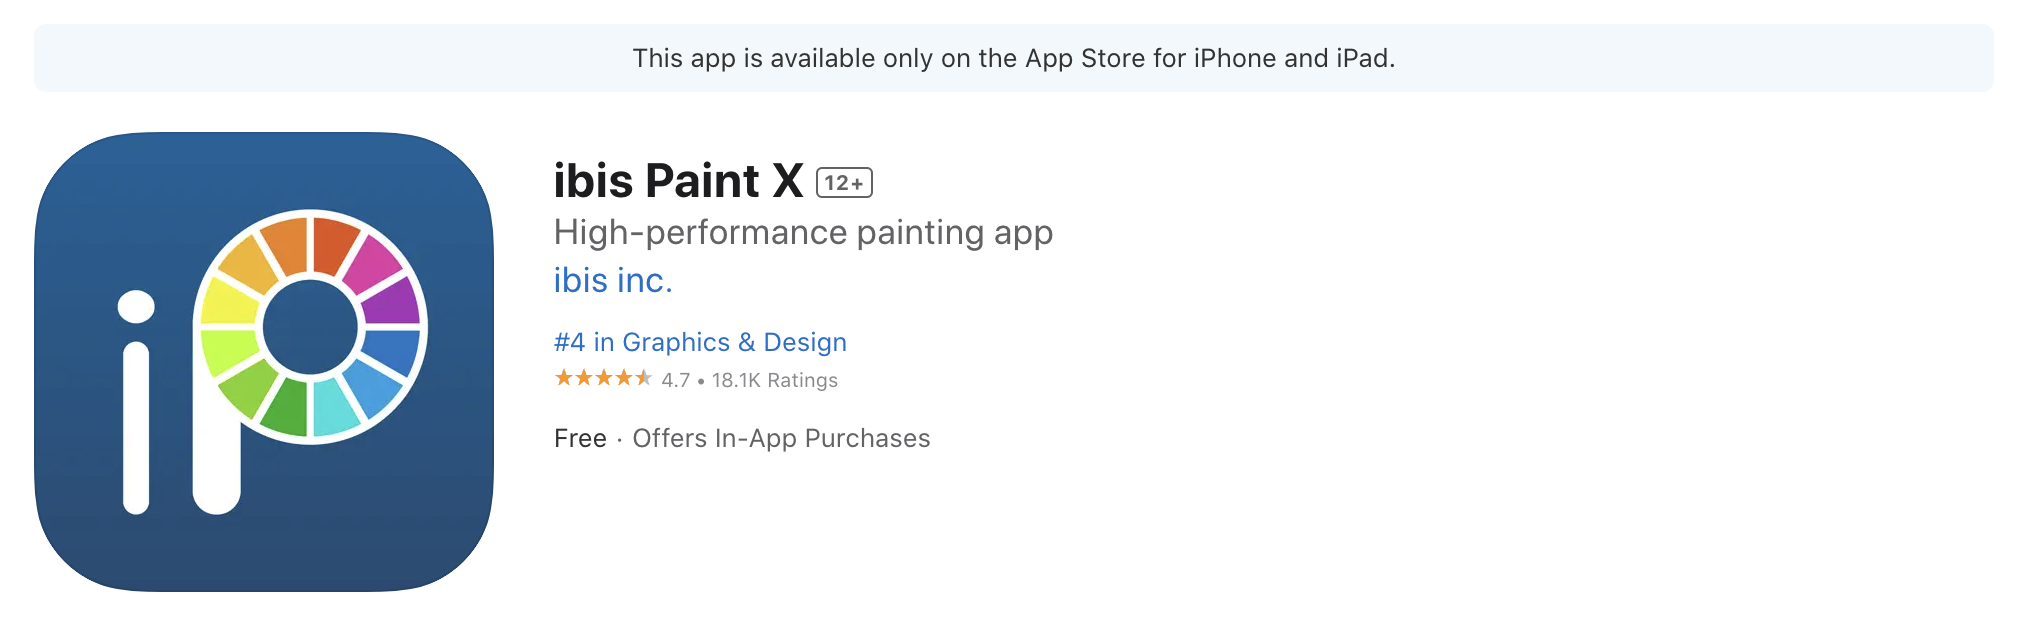 แอปวาดรูป iPad Ibis Paint X